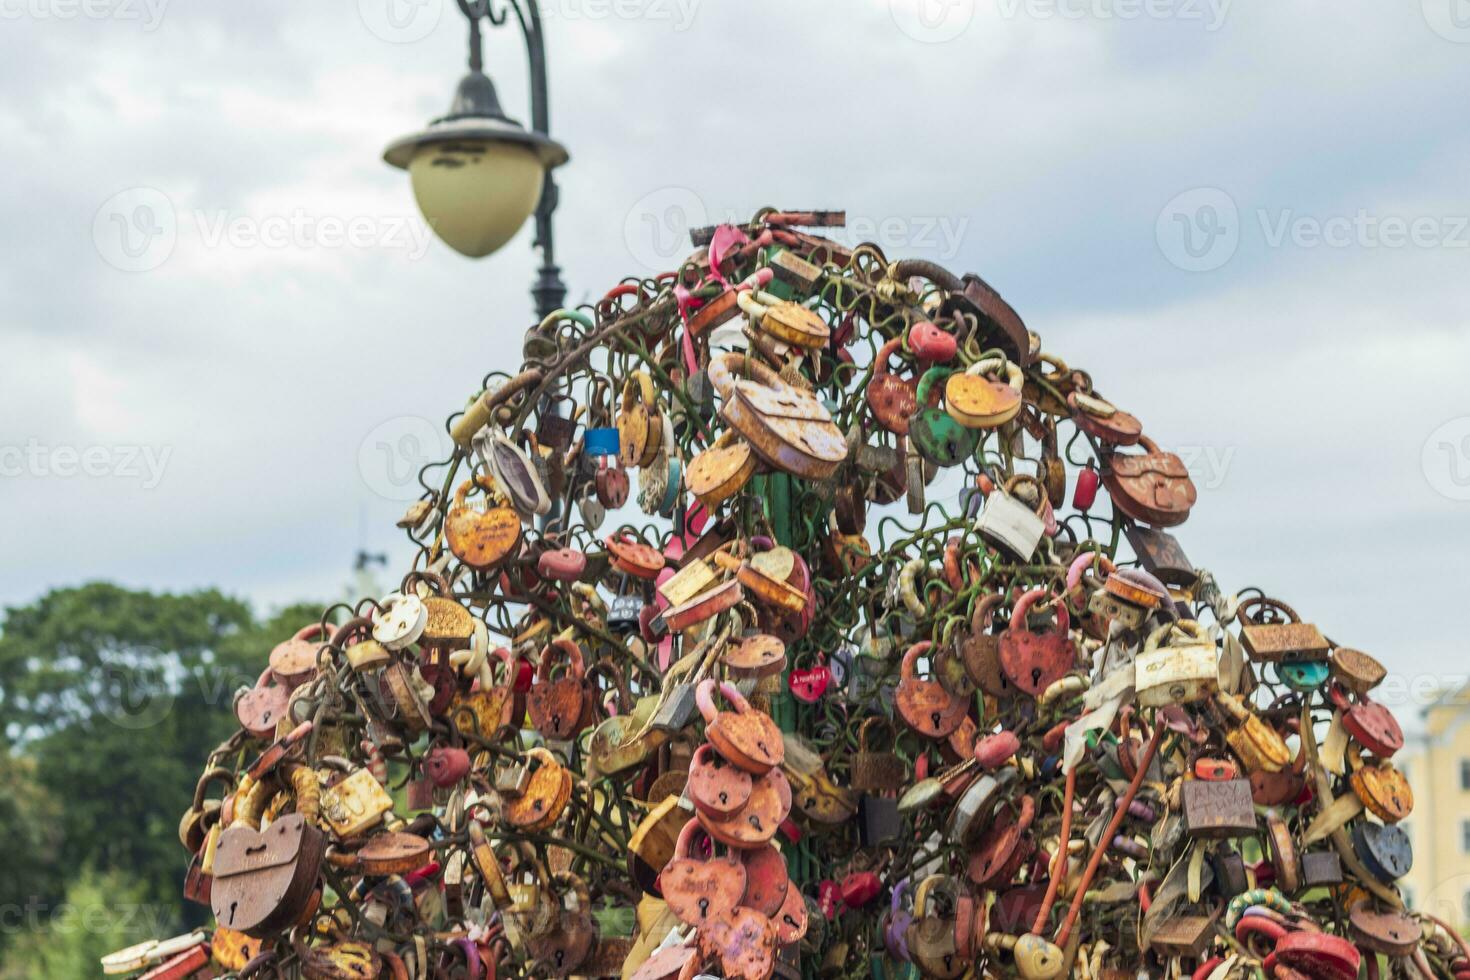 metal árbol estructura dónde parejas cierre el Cerraduras como un firmar de cierto amor. concepto foto